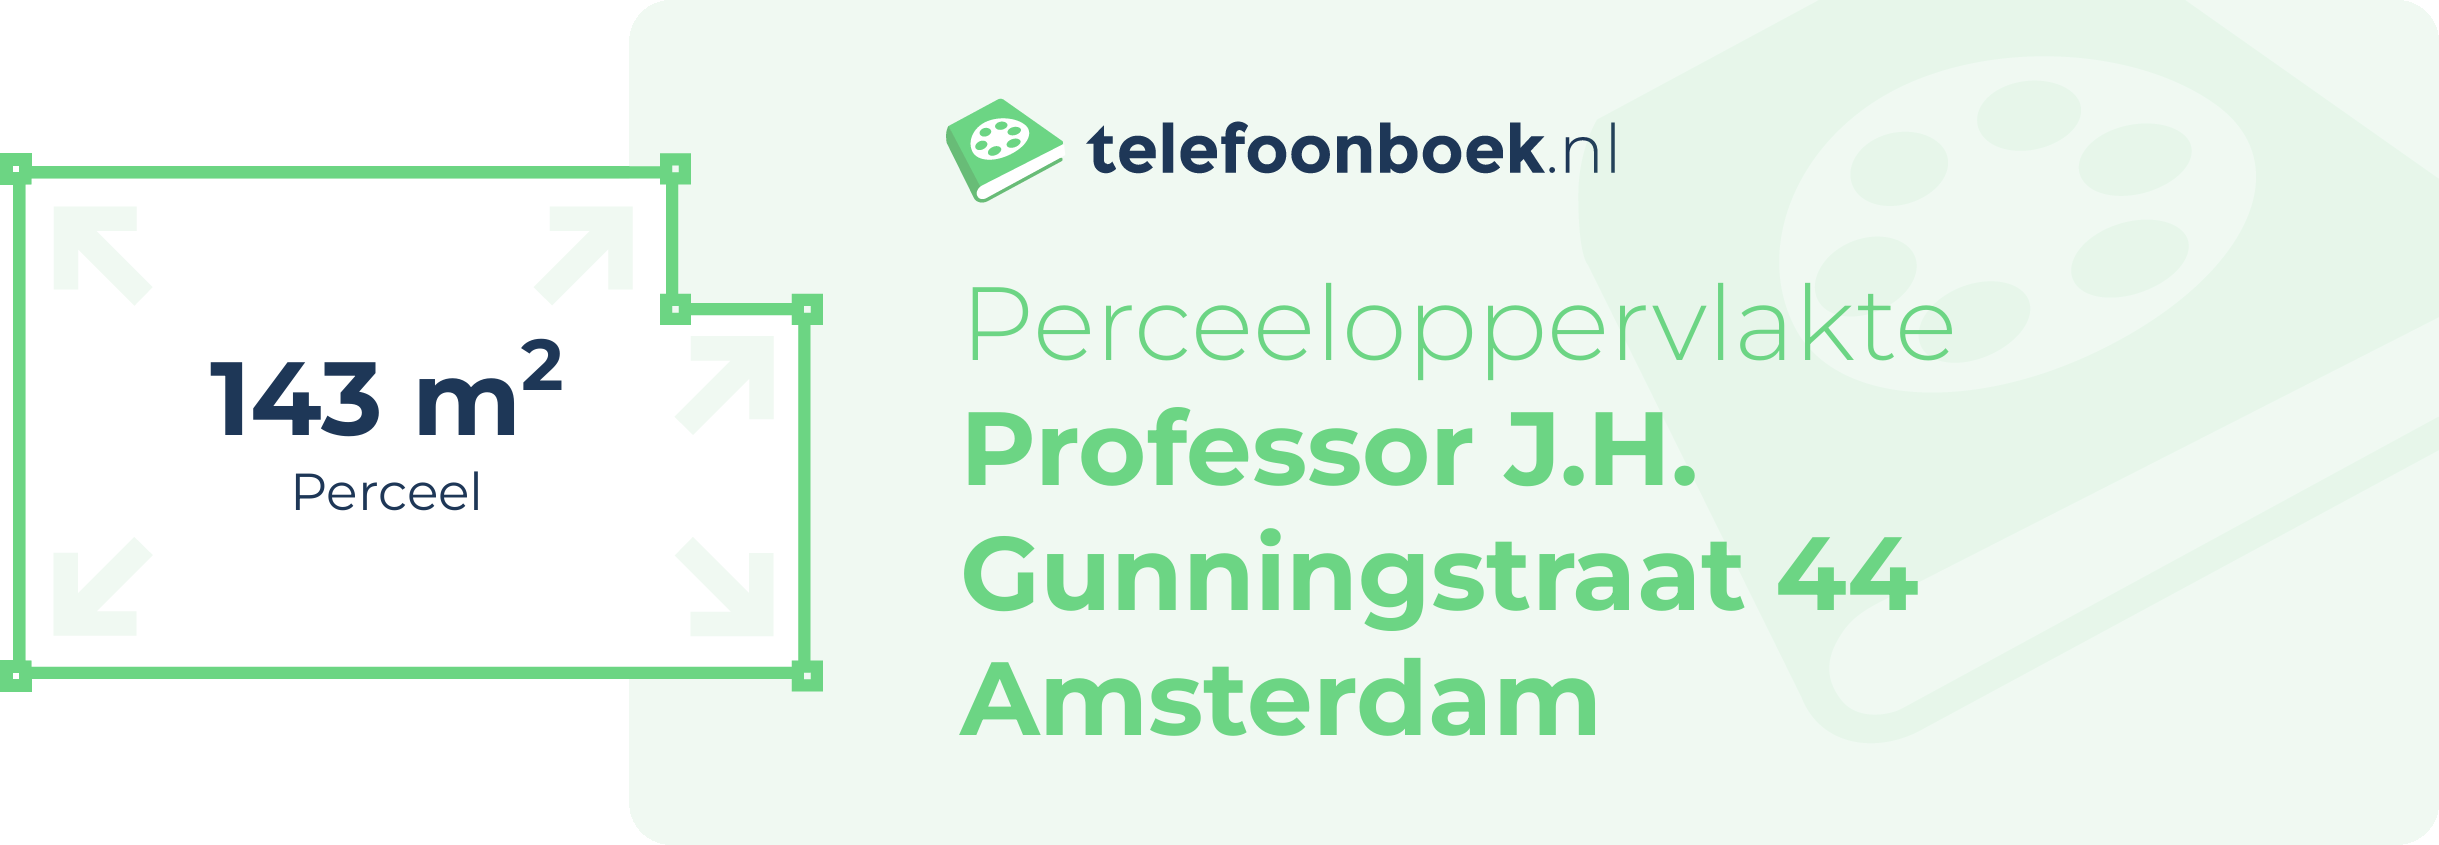 Perceeloppervlakte Professor J.H. Gunningstraat 44 Amsterdam